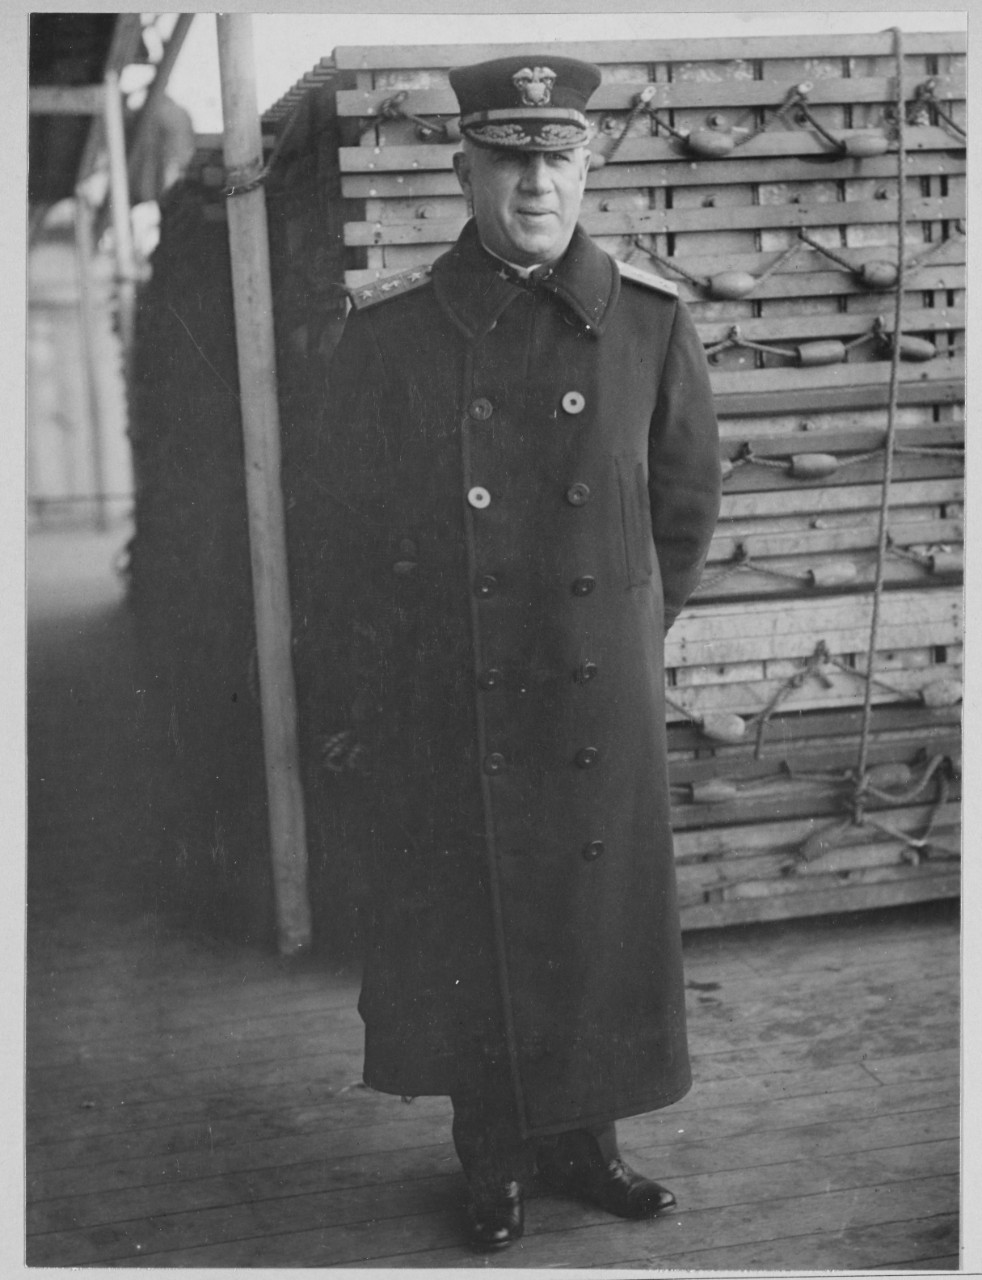 Photograph of Bullard standing in naval uniform and overcoat